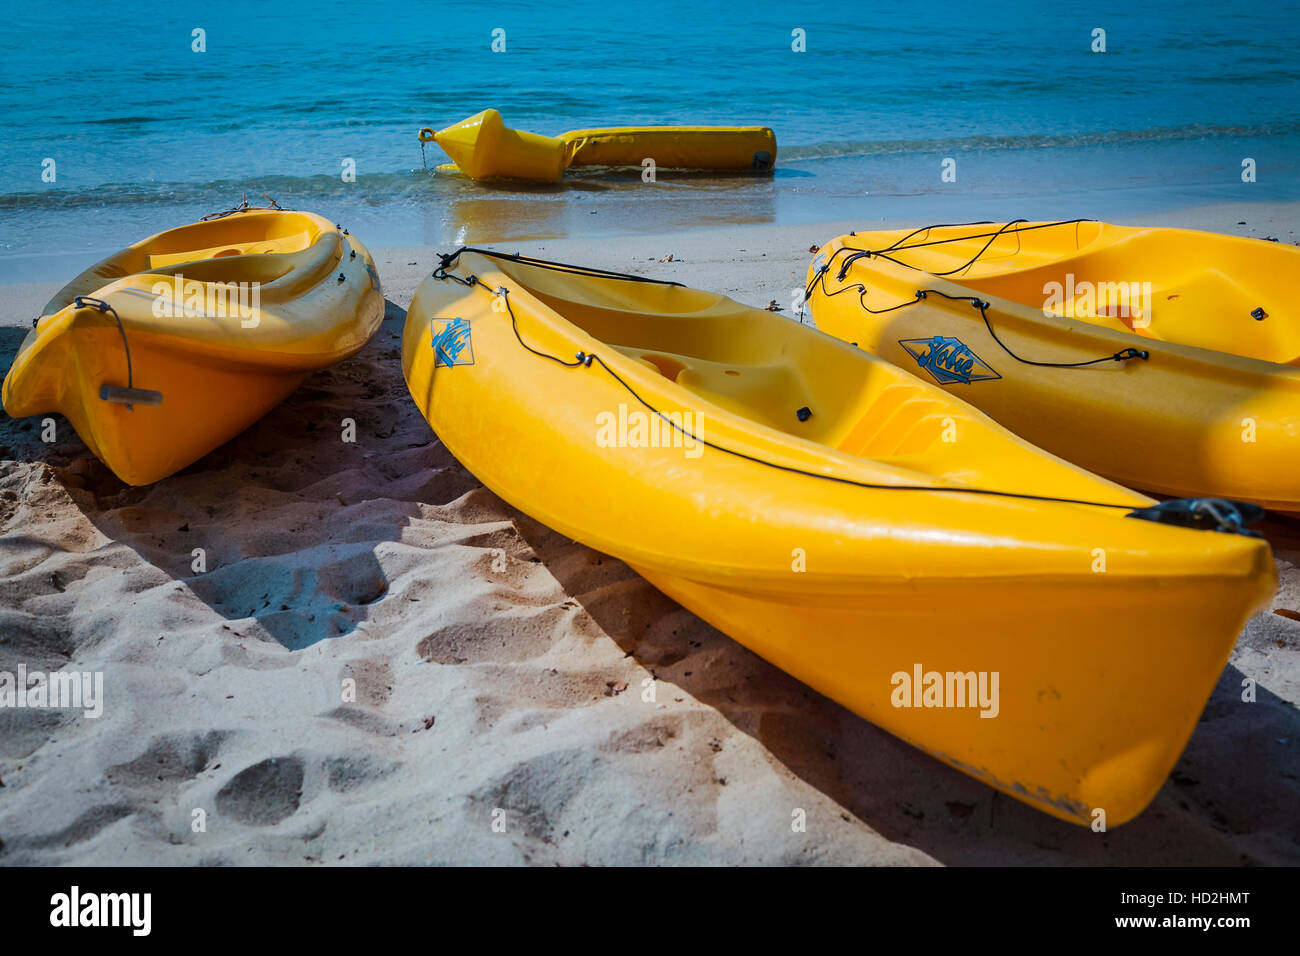 3 yellow kayaks on sandy beach Stock Photo